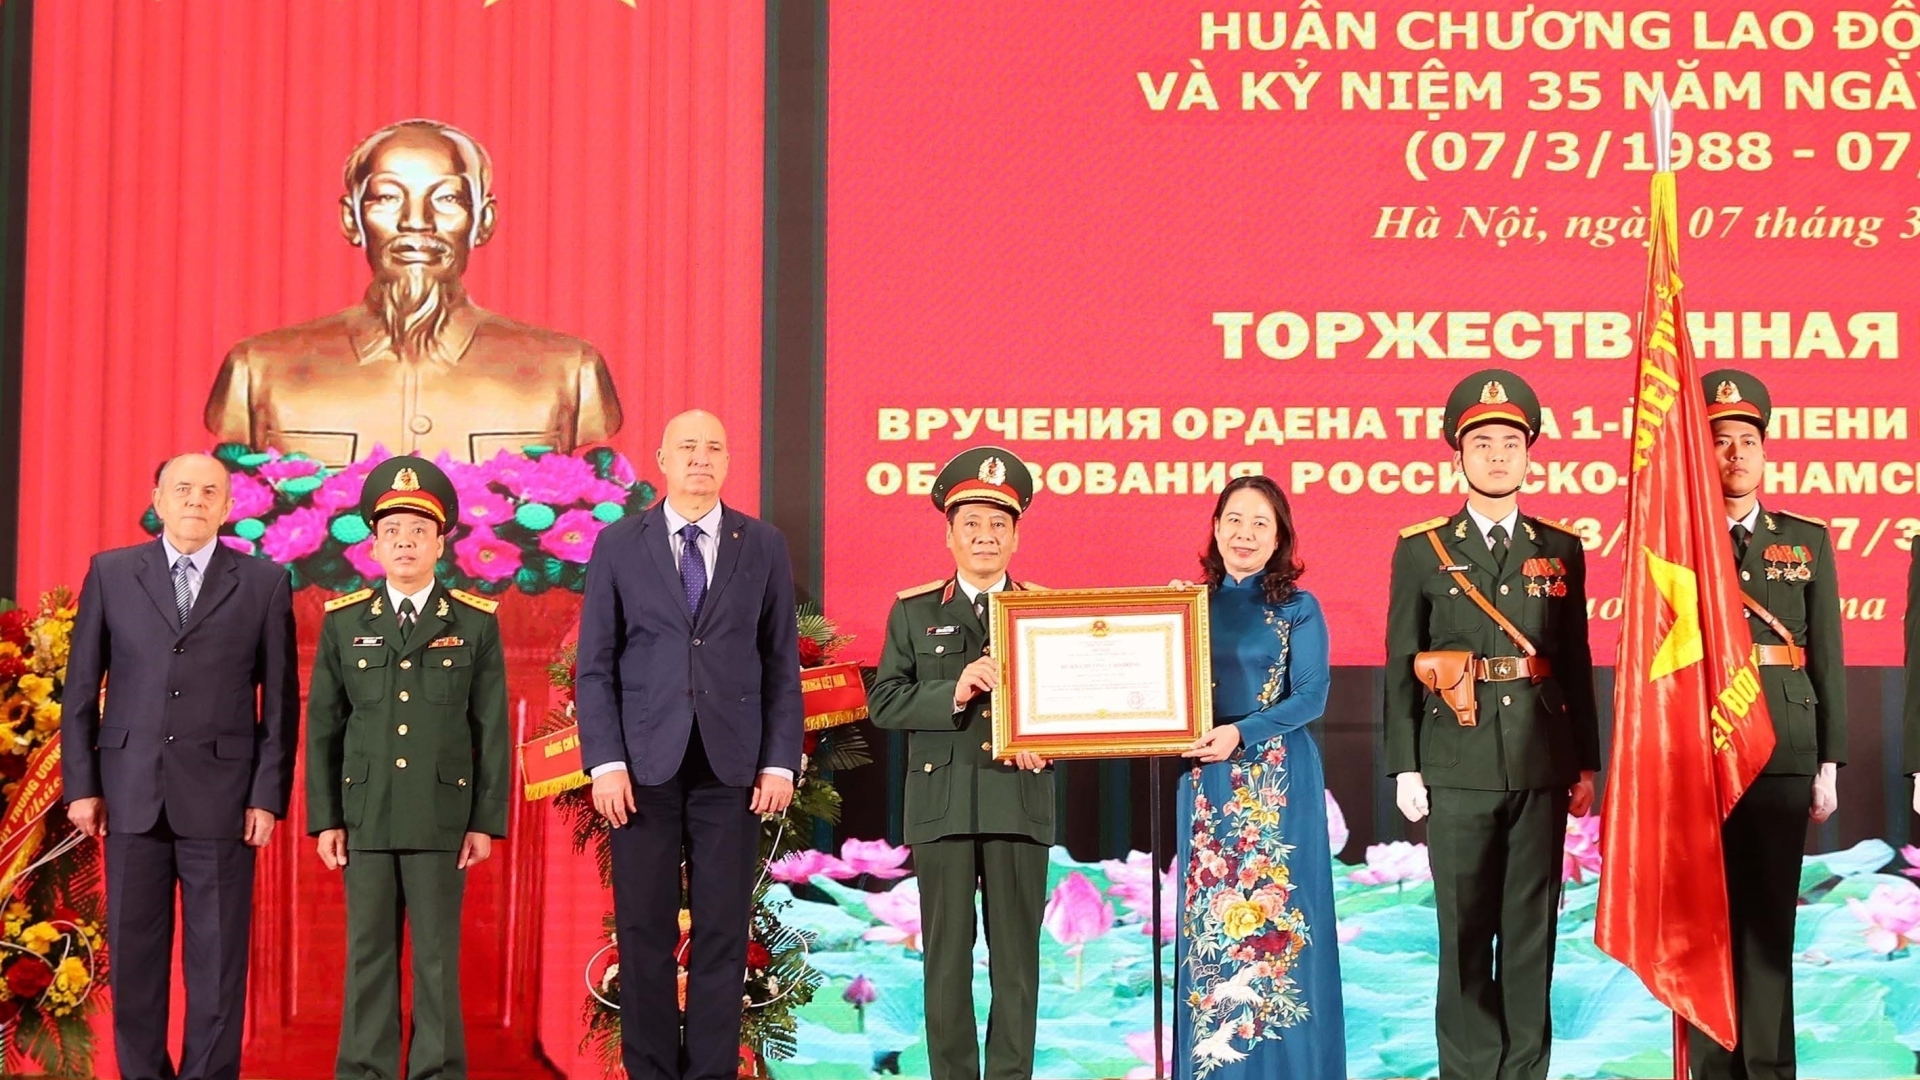 国家副主席武氏映春出席越南-俄罗斯热带中心成立35周年庆典